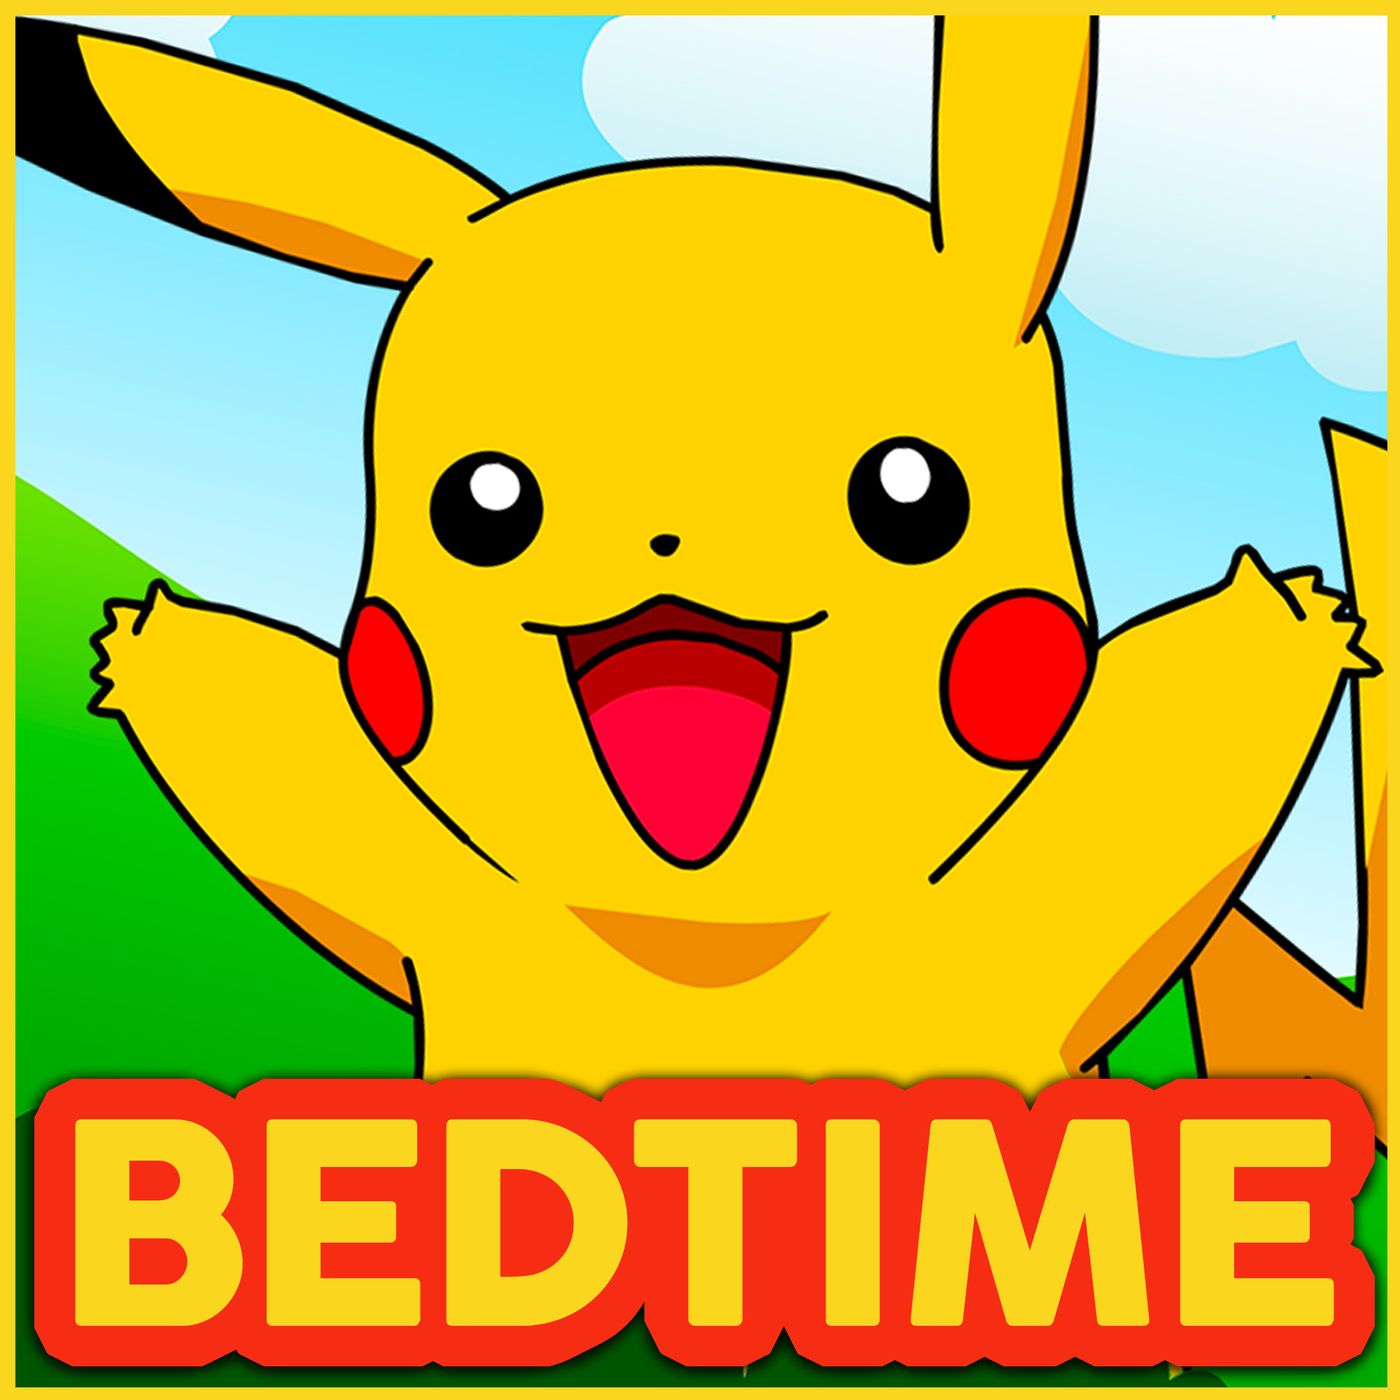 Pokemon Master 2 - Bedtime Story